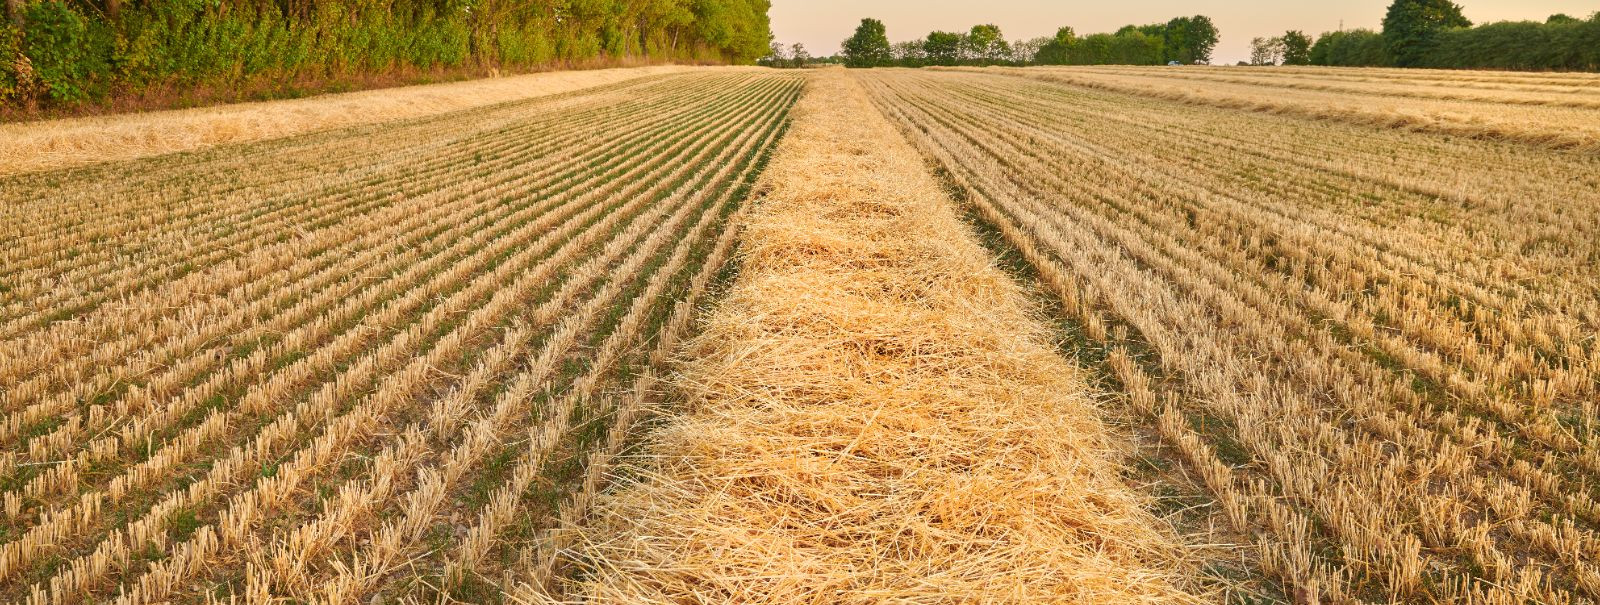 Ankiter OÜ on loodud 2017. aastal, eesmärgiga kasvatada teravilja ja rapsi.  2022.aasta alguses tõi COVIDi-järgne taastumine kaasa tarne-ja kaubandushäired ning